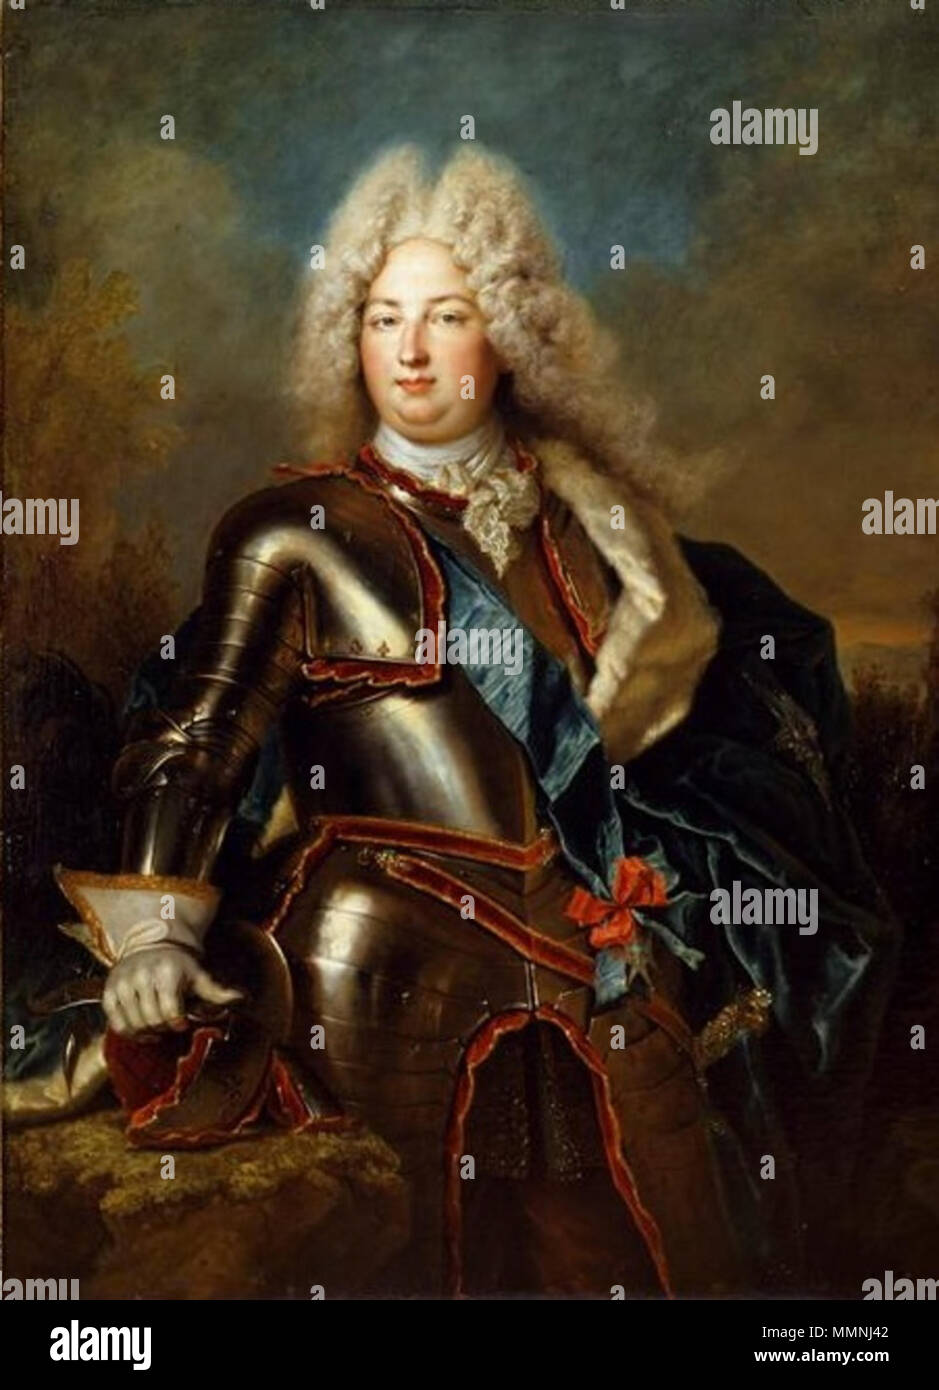 Charles de France, Duc de Berry portant la ceinture de l'ordre de l'Esprit Saint (18ème siècle, Nicolas de Largillière) Banque D'Images